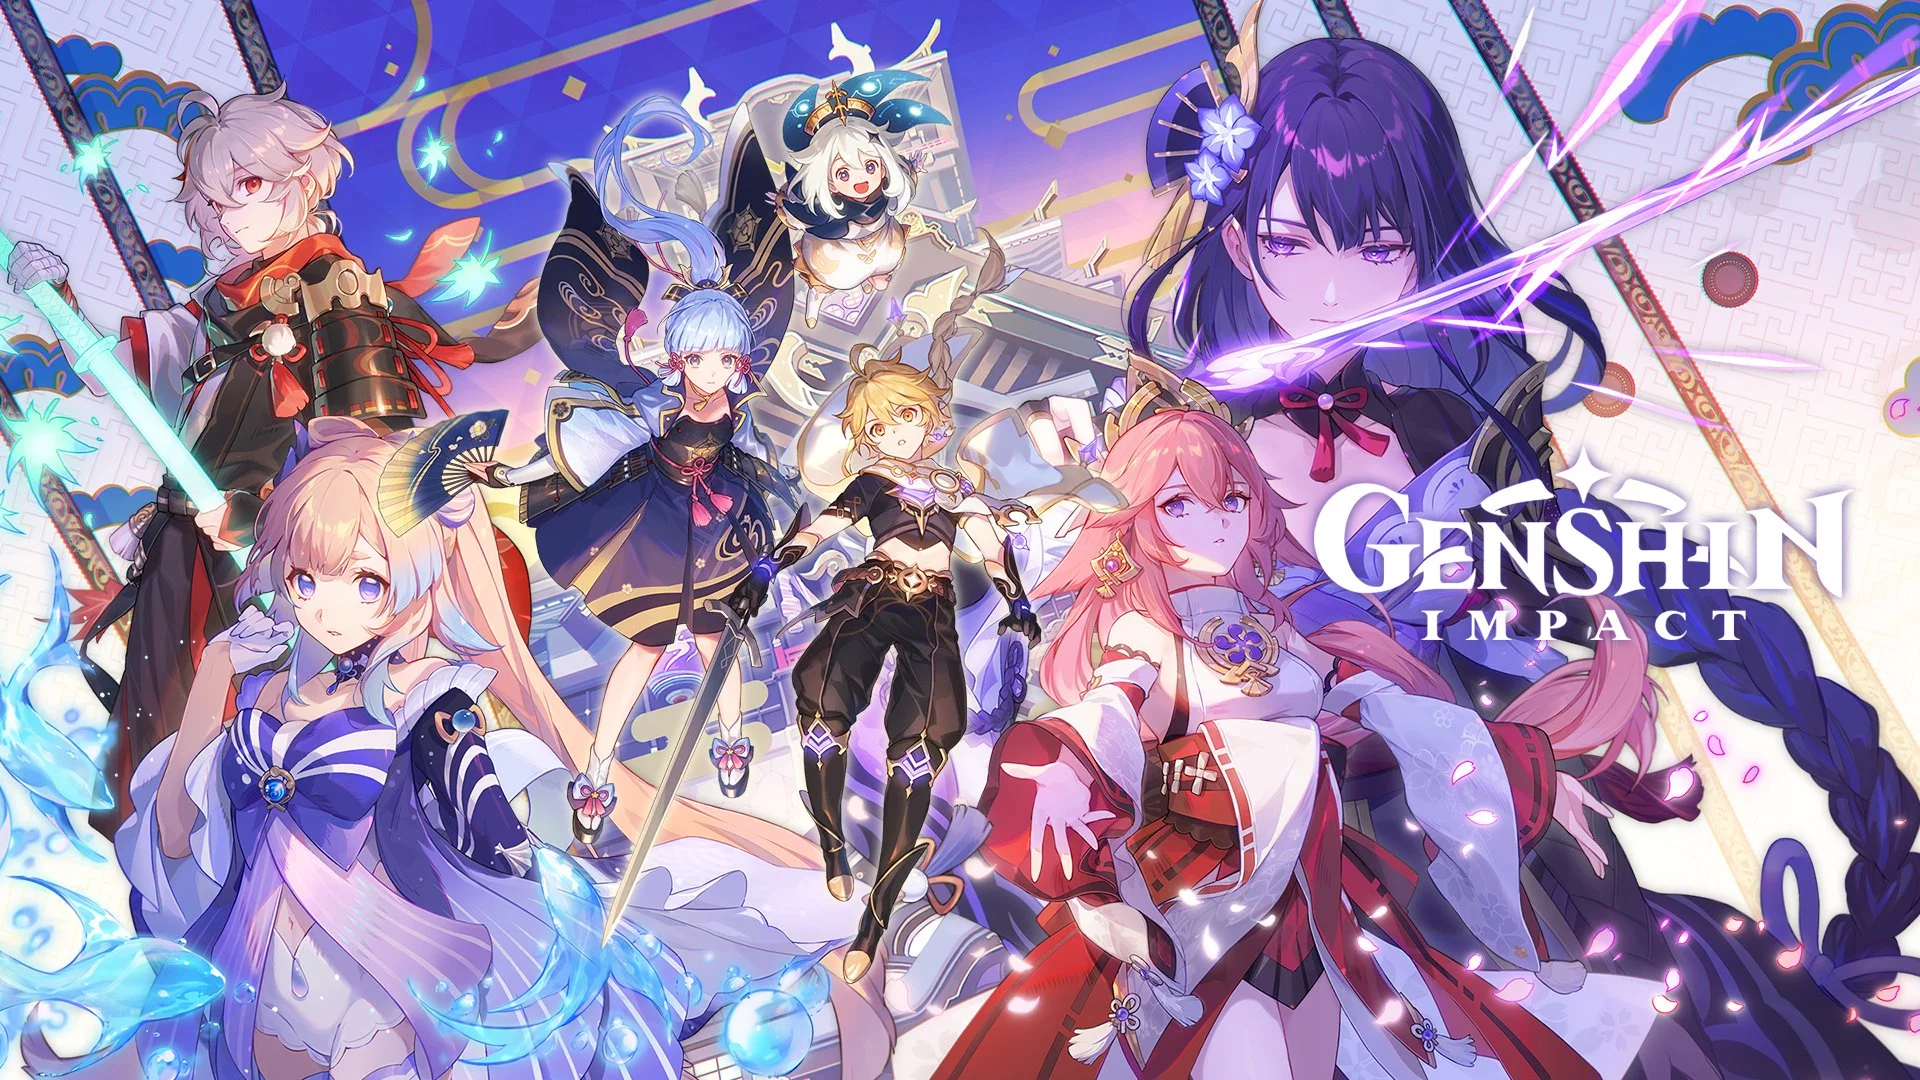 Genshin-Impact-atualizacao-2.1 Genshin Impact 2.1: atualização liberada com novas regiões e personagens